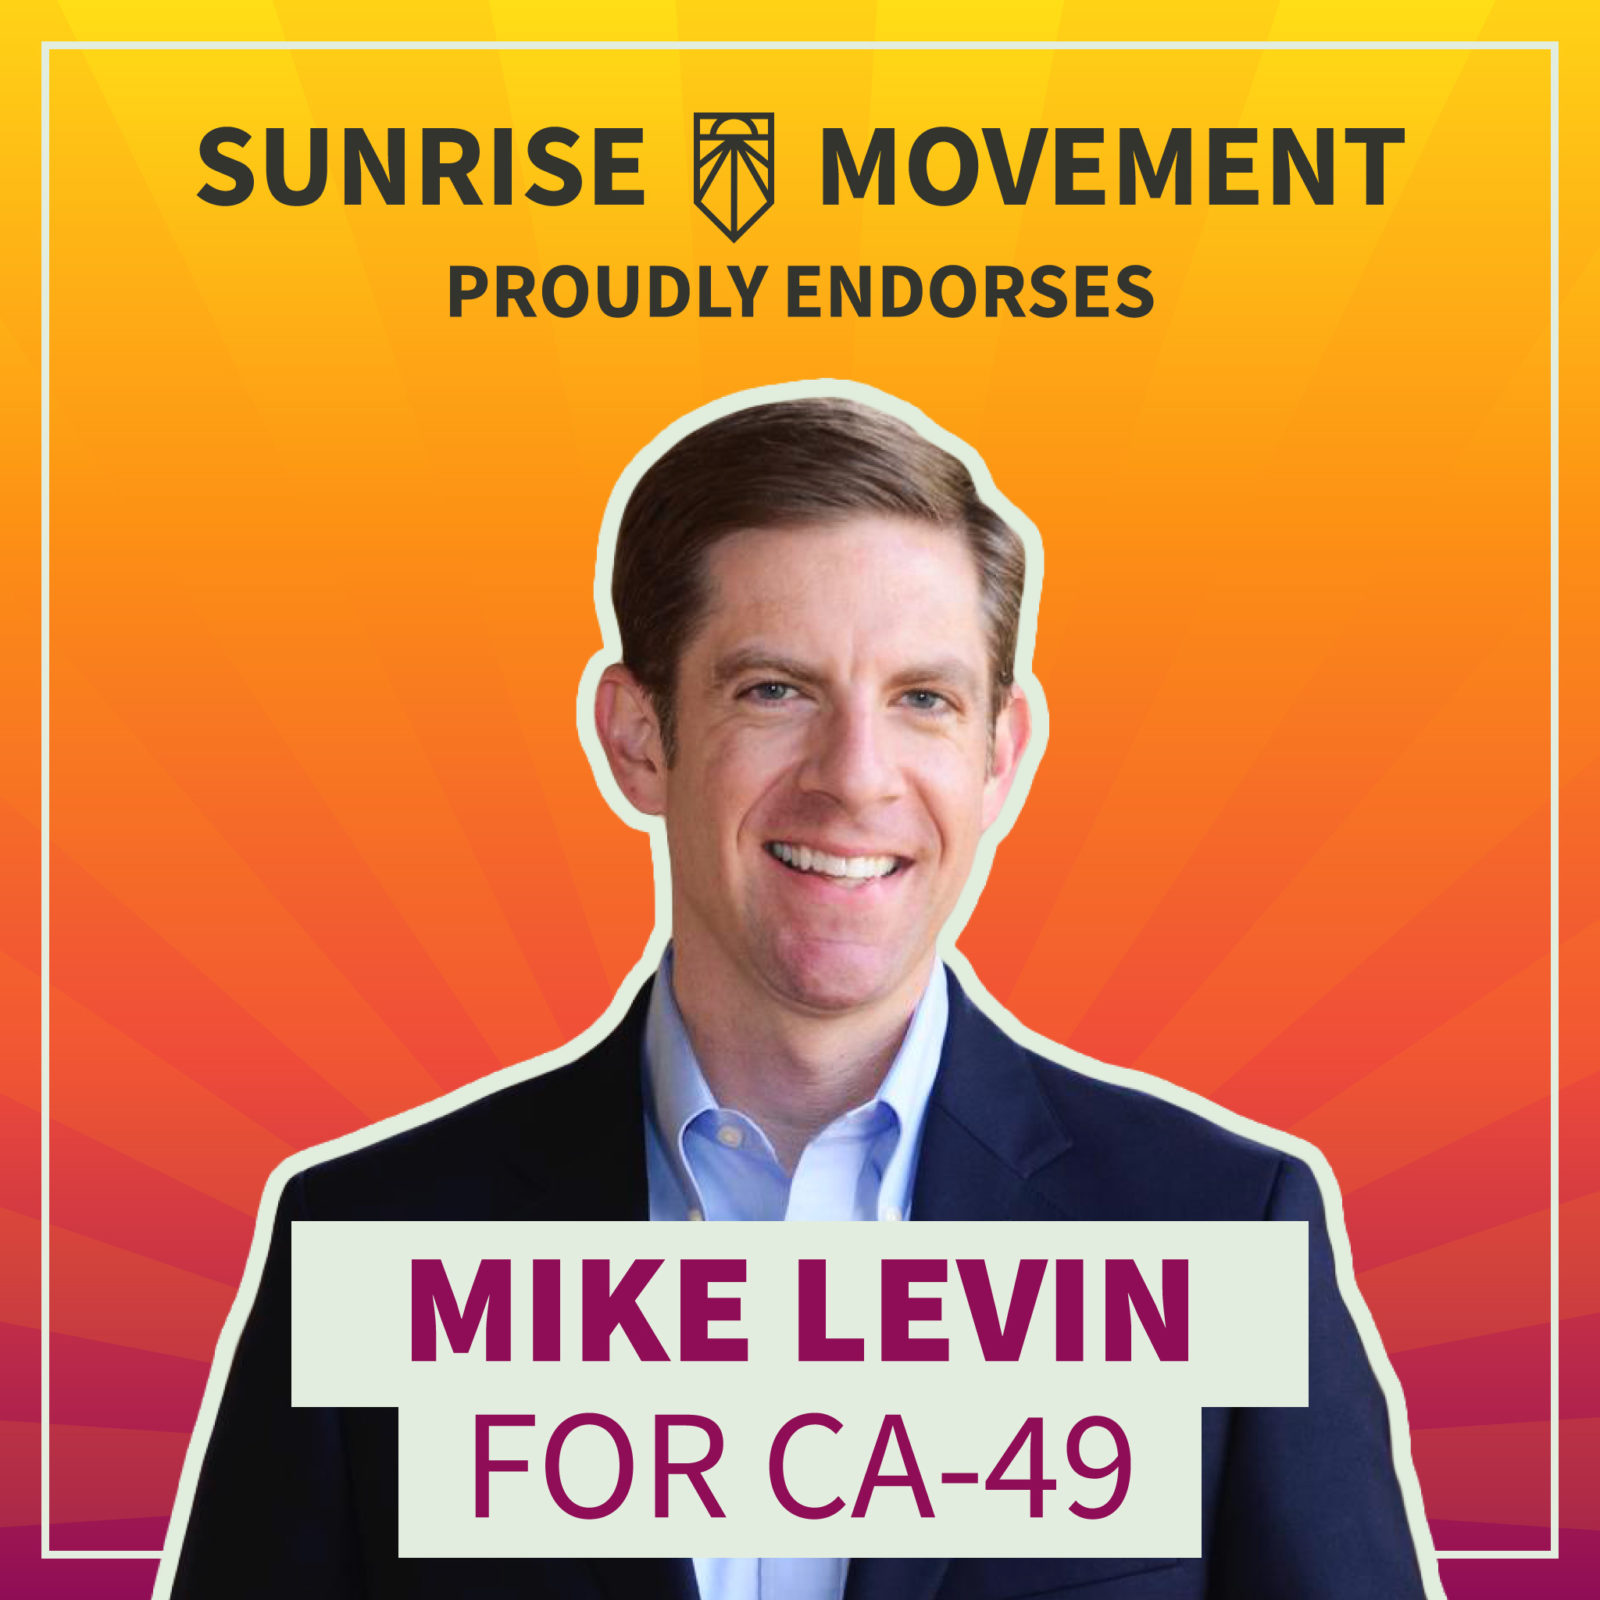 Una foto de Mike Levin con texto: Sunrise Movement respalda con orgullo a Mike Levin para CA-49